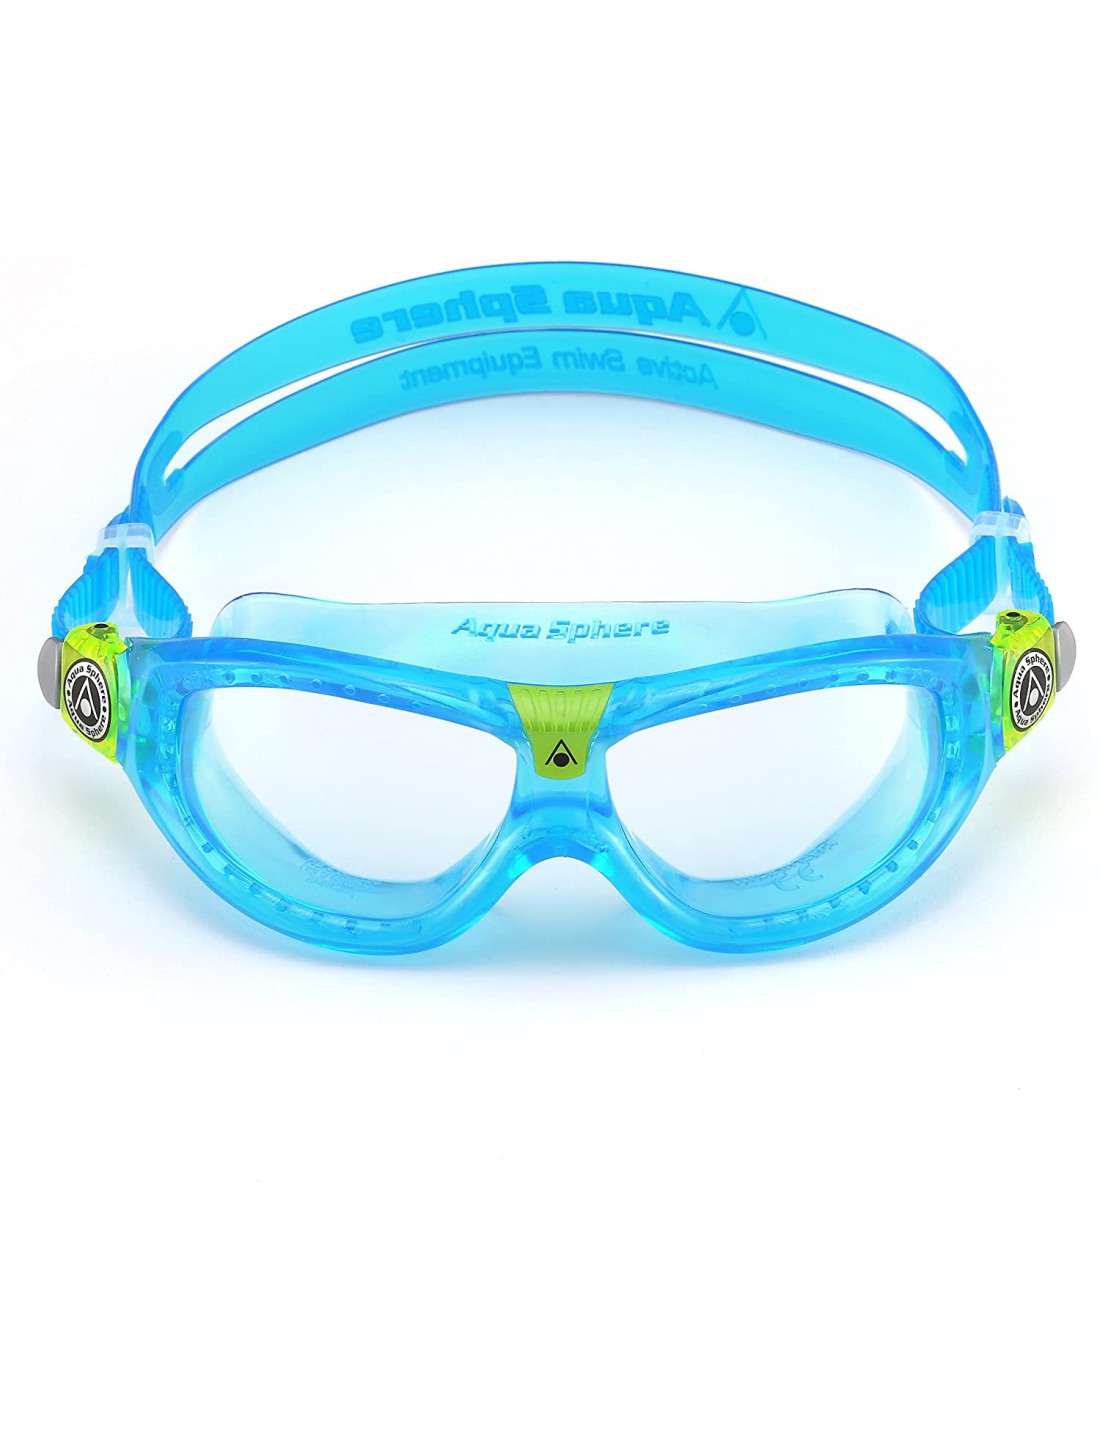 Gafas de natación Seal Kid 2 Moldura azul. Aqua Sphere